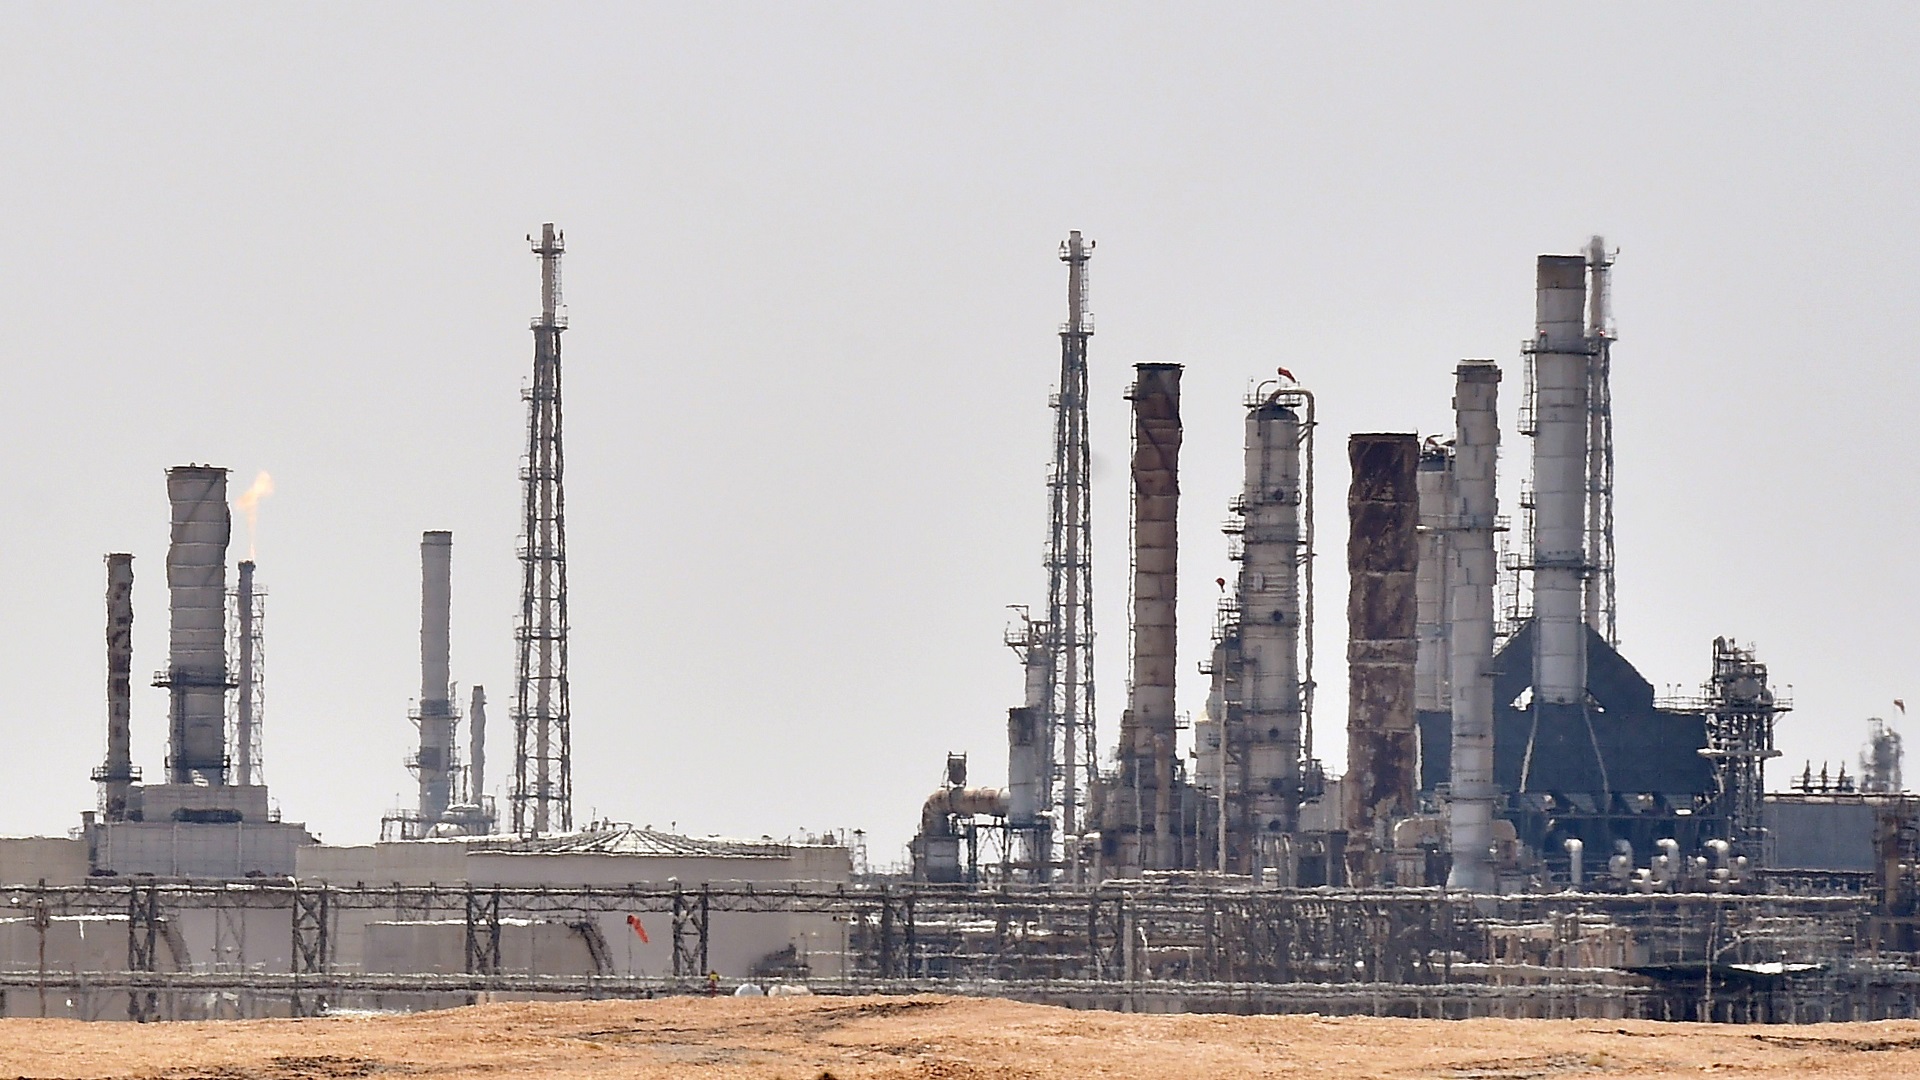 السعودية لن تبيع النفط للدول التي تحدد سقفا سعريا لإمداداتها